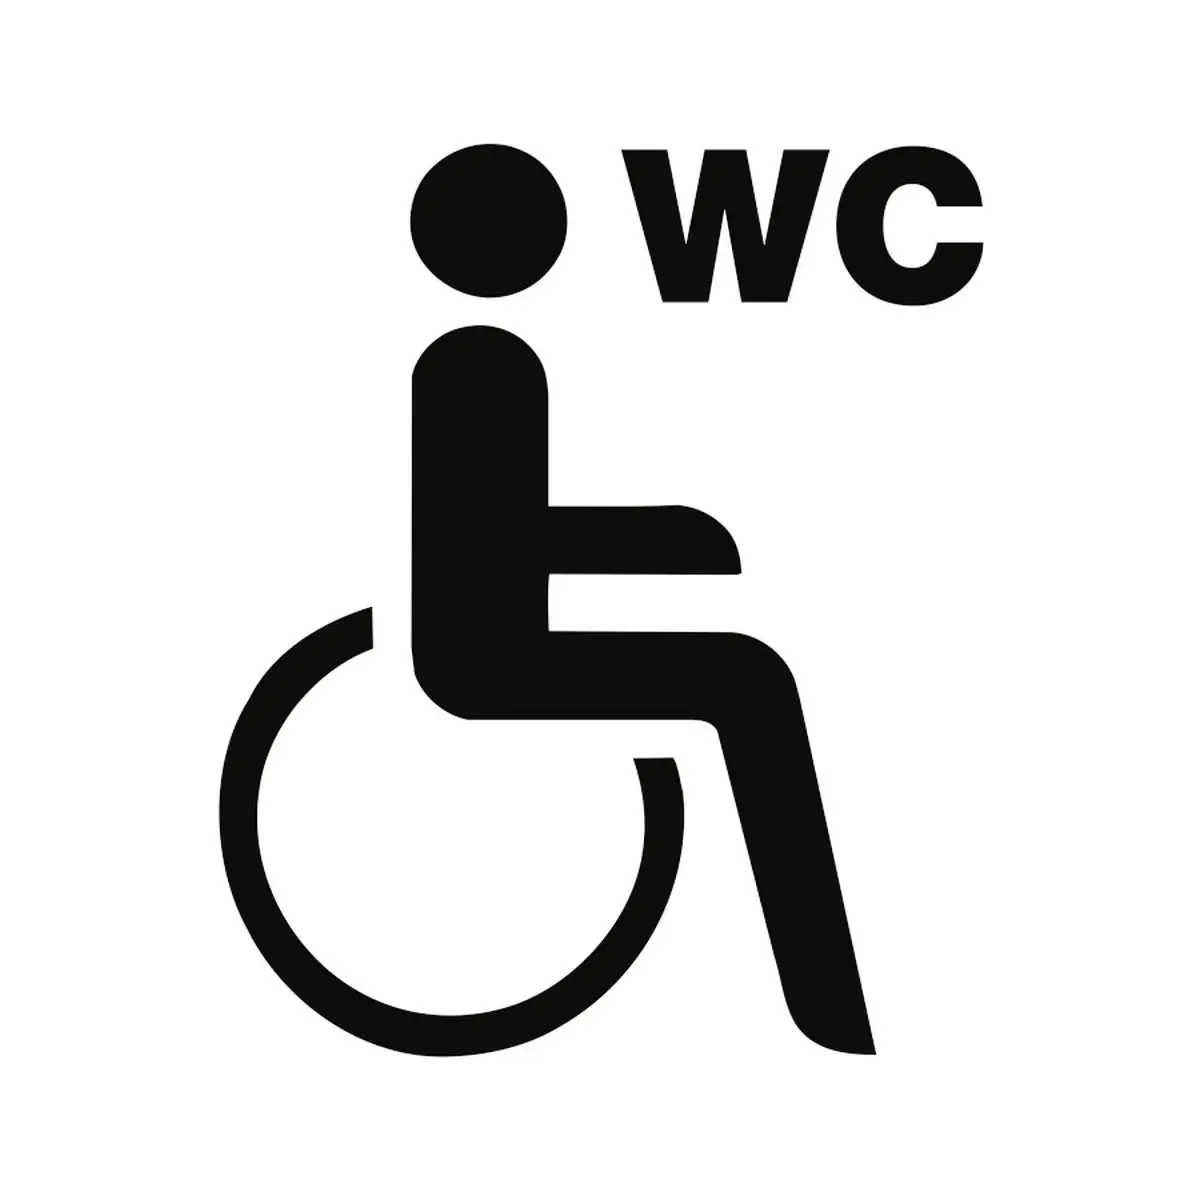 Piktogramm WC Behinderte/barrierefrei mit Text WC, Folie, 160x160 mm